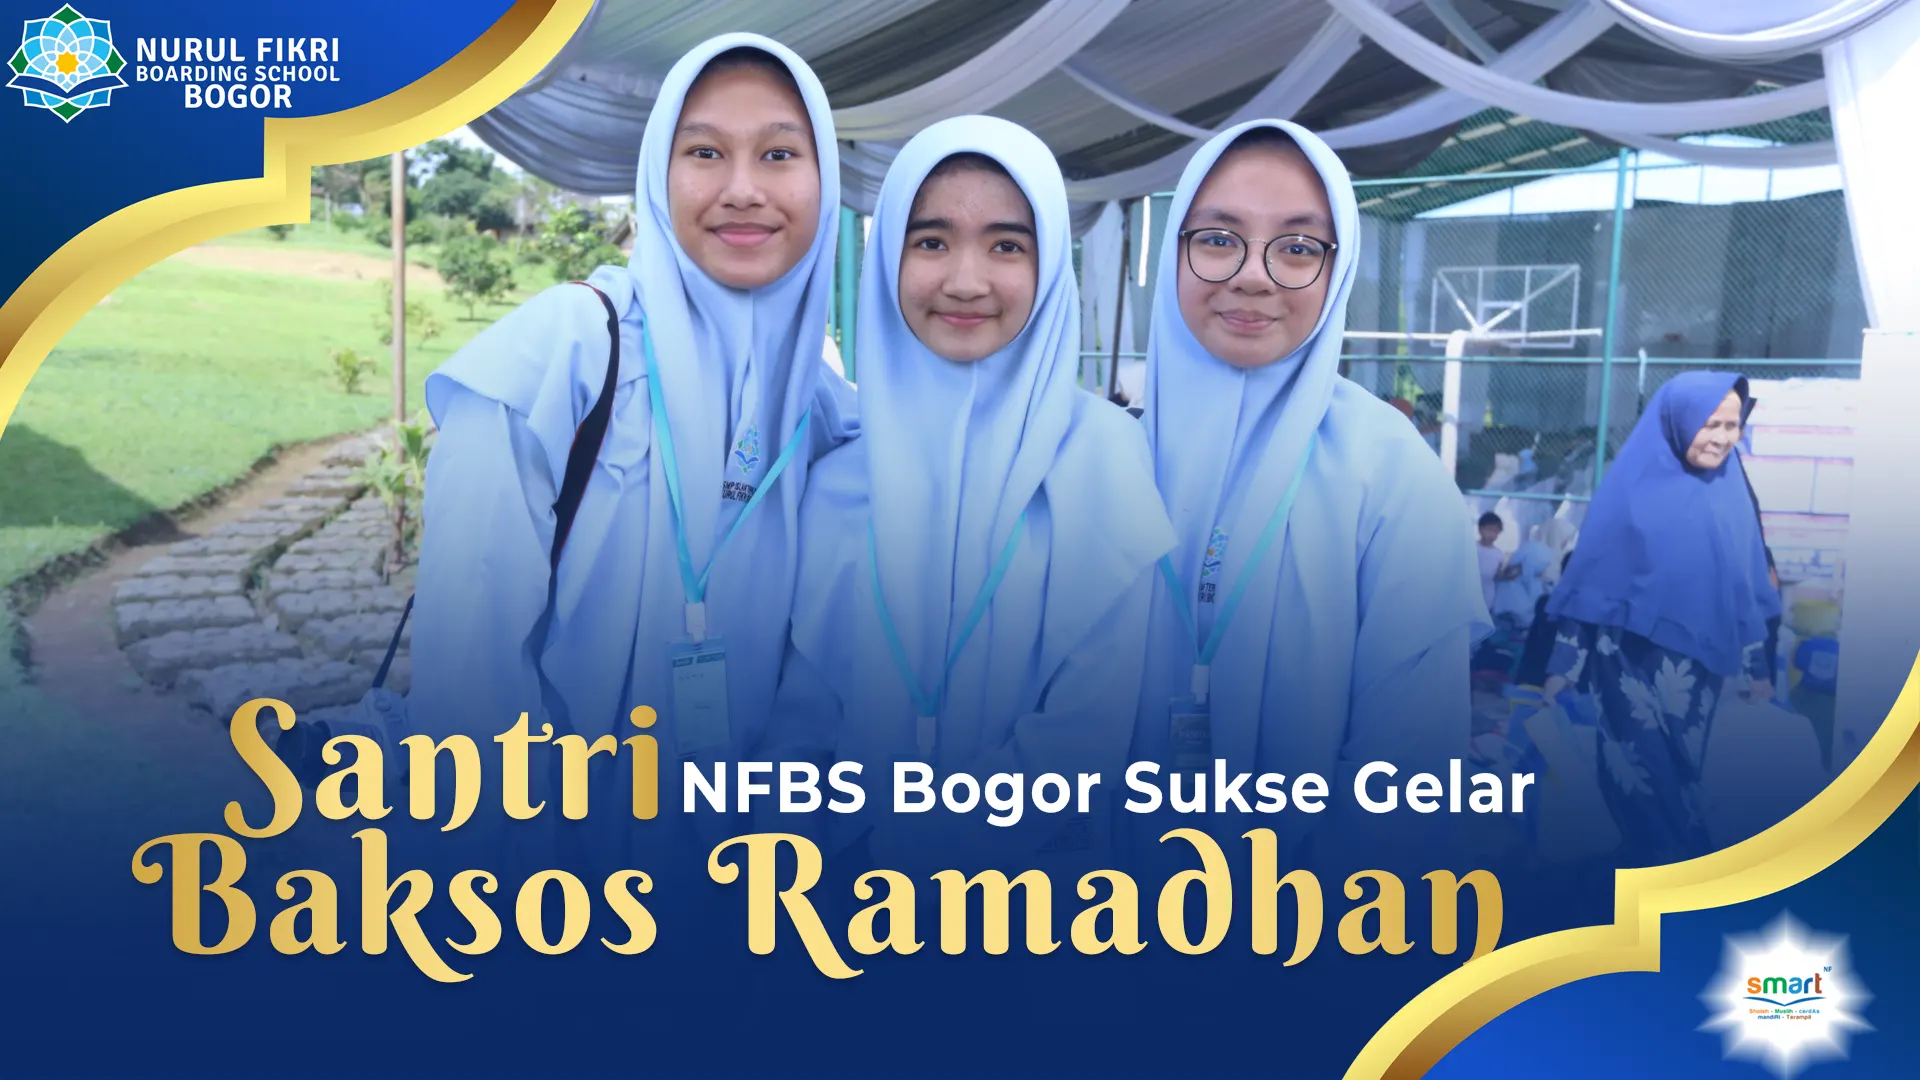 Menginspirasi Kepedulian Sosial: Testimoni Santri NFBS Bogor dalam Kegiatan Ramadhan